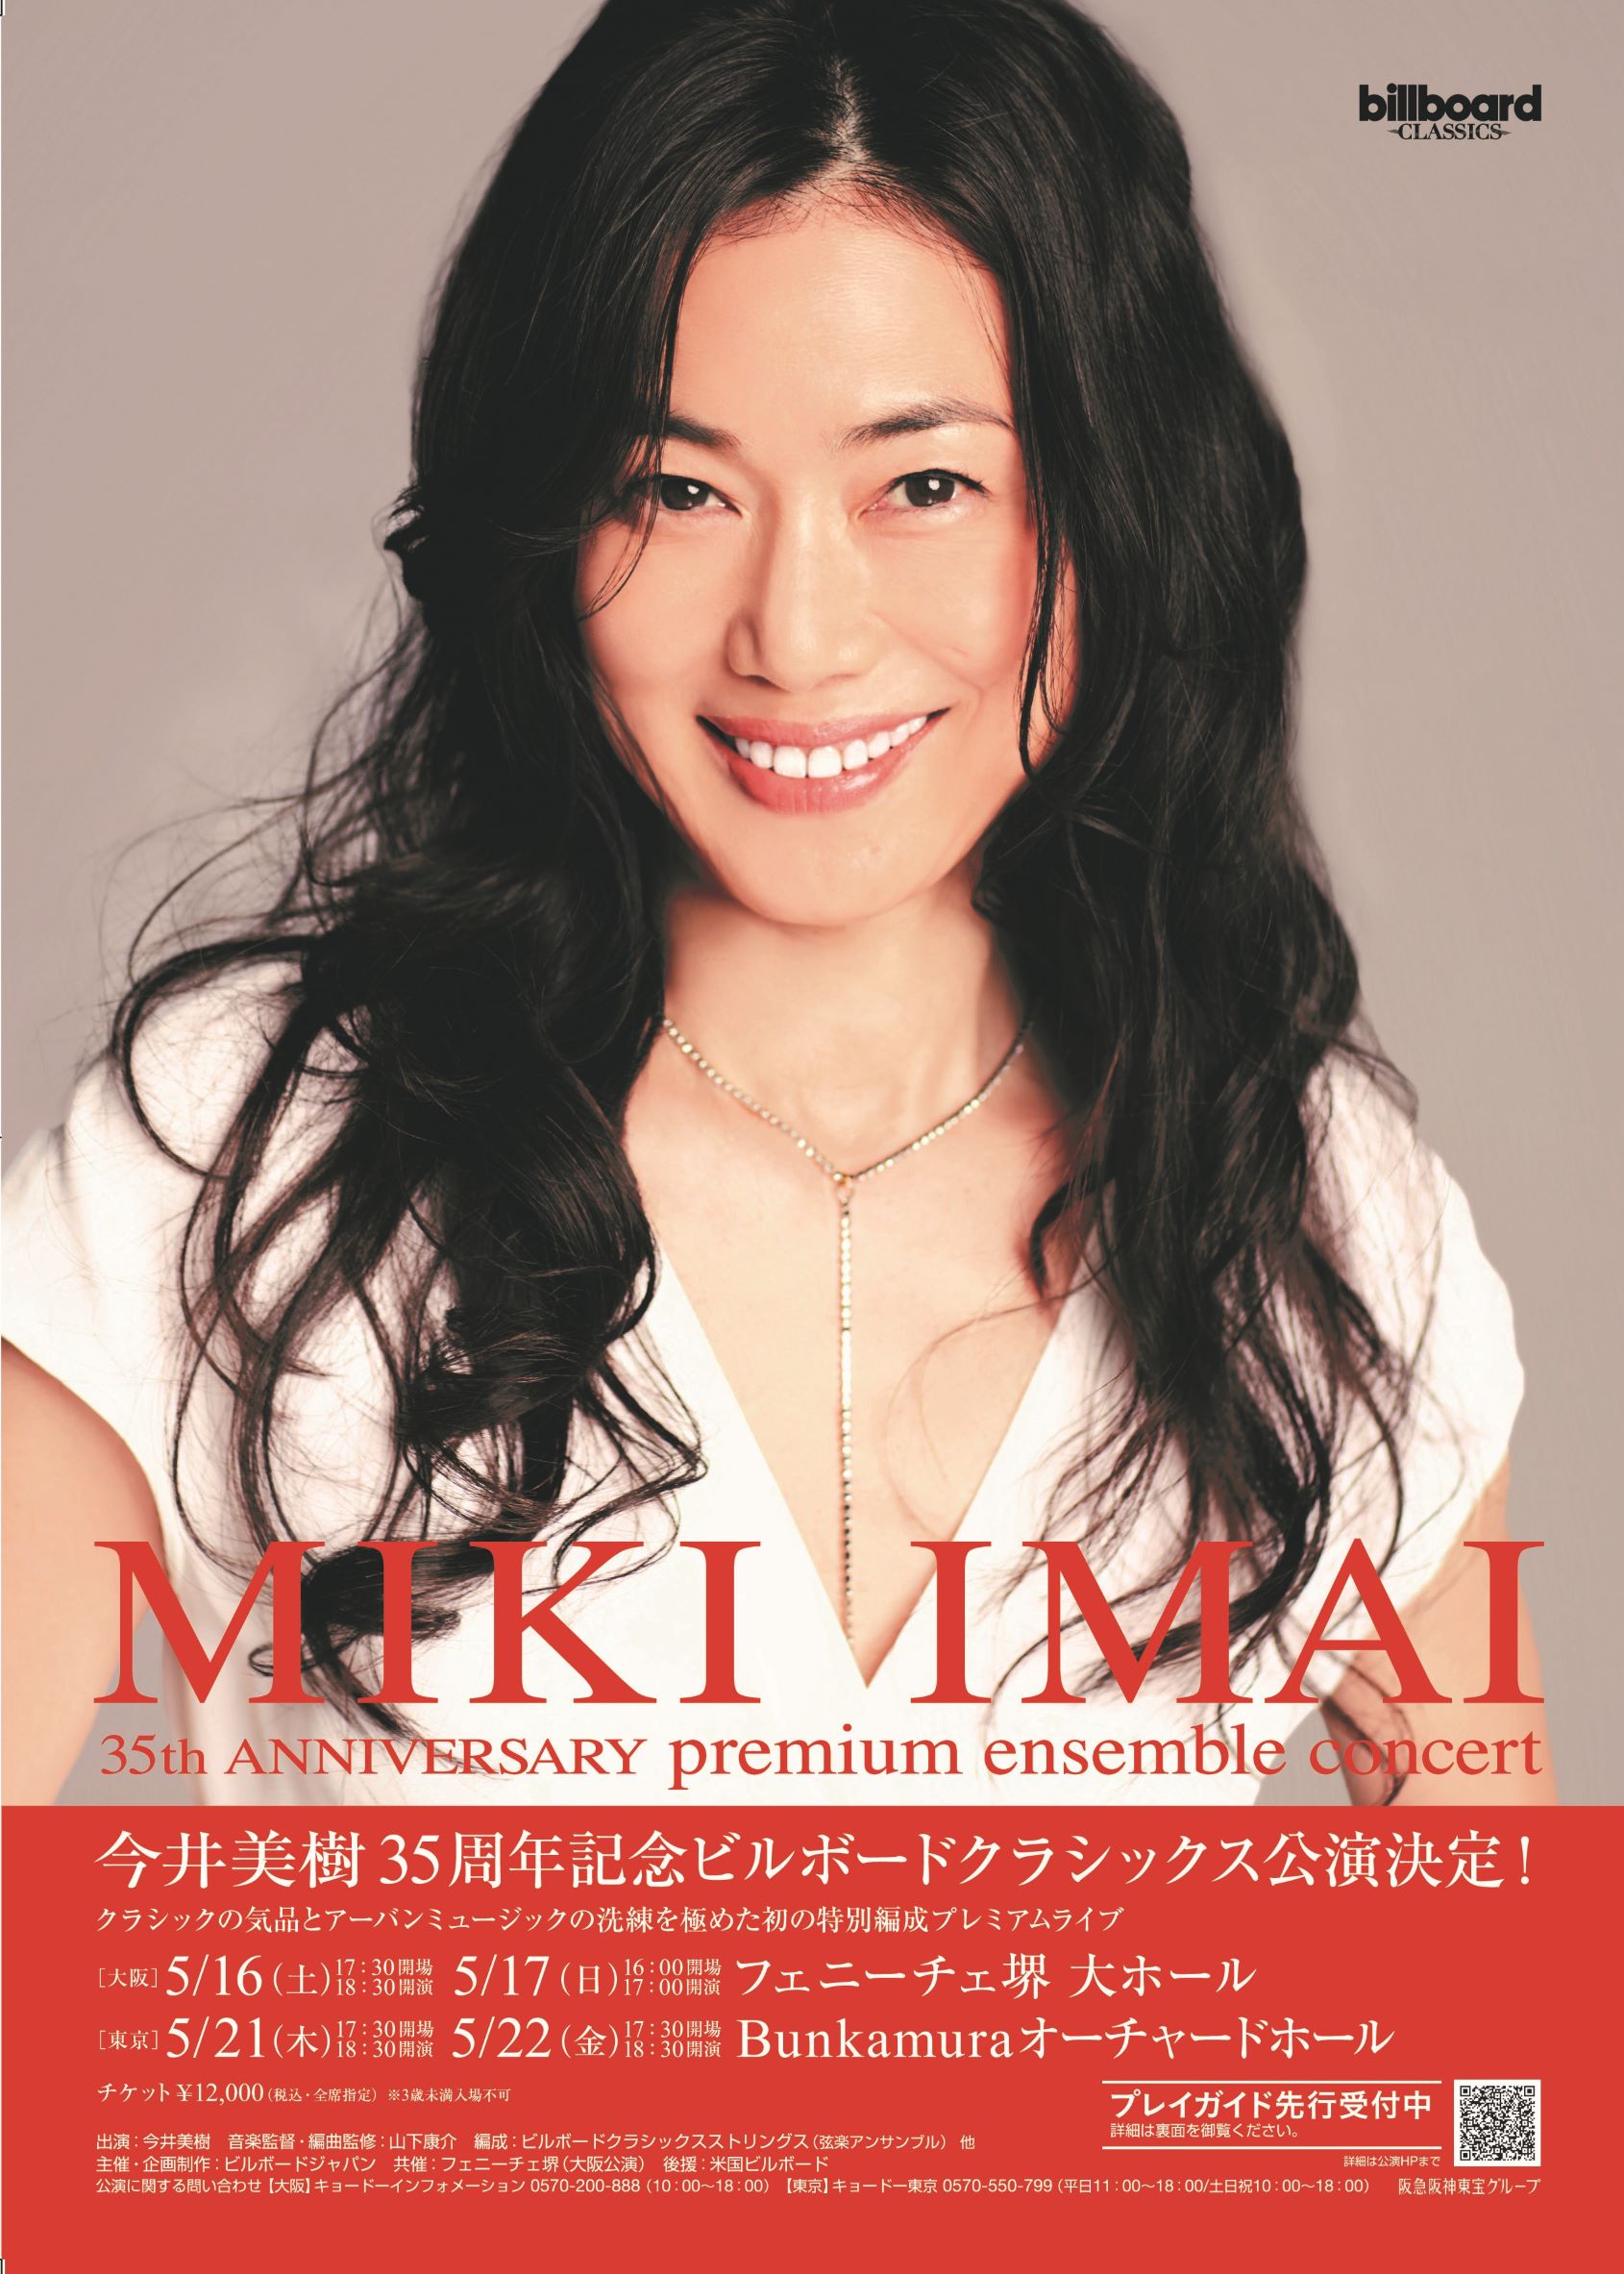 【延期】今井美樹　billboard classics MIKI IMAI 35th Anniversary premium ensemble concert